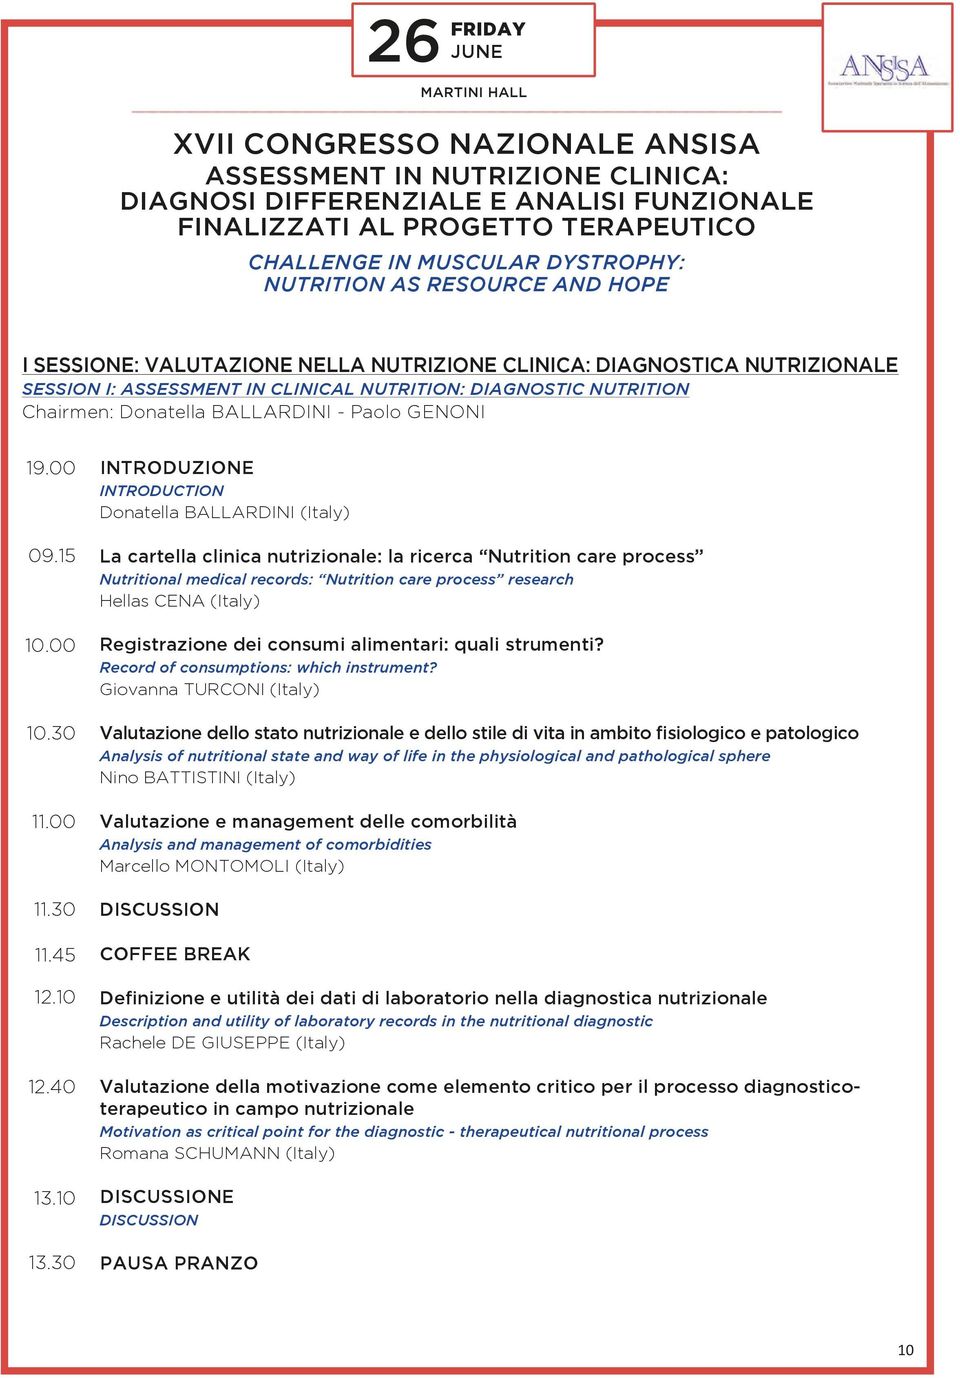 Donatella Ballardini - Paolo Genoni 19.00 09.15 10.00 10.30 11.00 11.30 11.45 12.10 12.40 13.10 13.